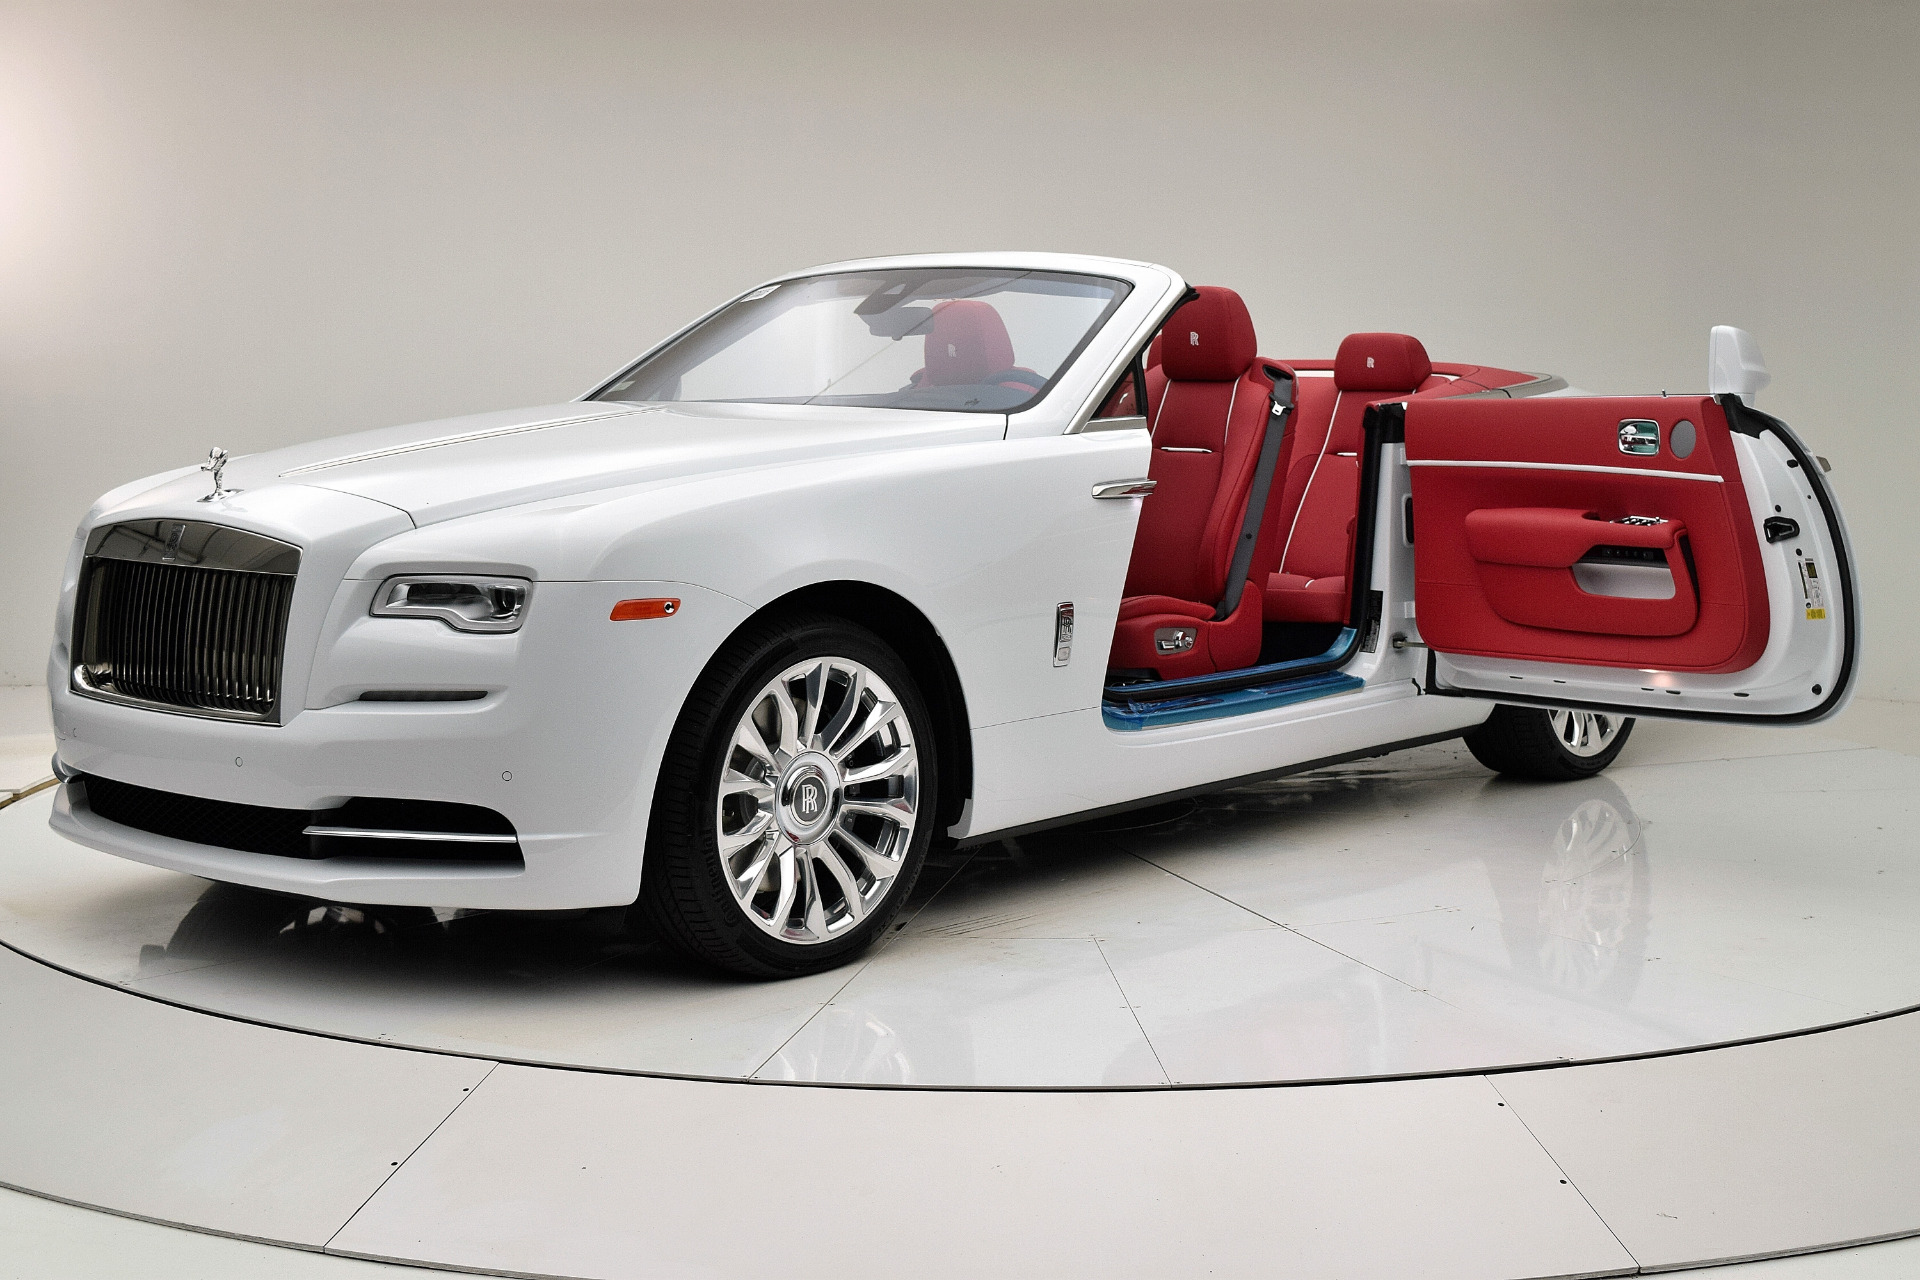 New 2020 Rolls Royce Dawn For Sale 389 925 F C Kerbeck Rolls